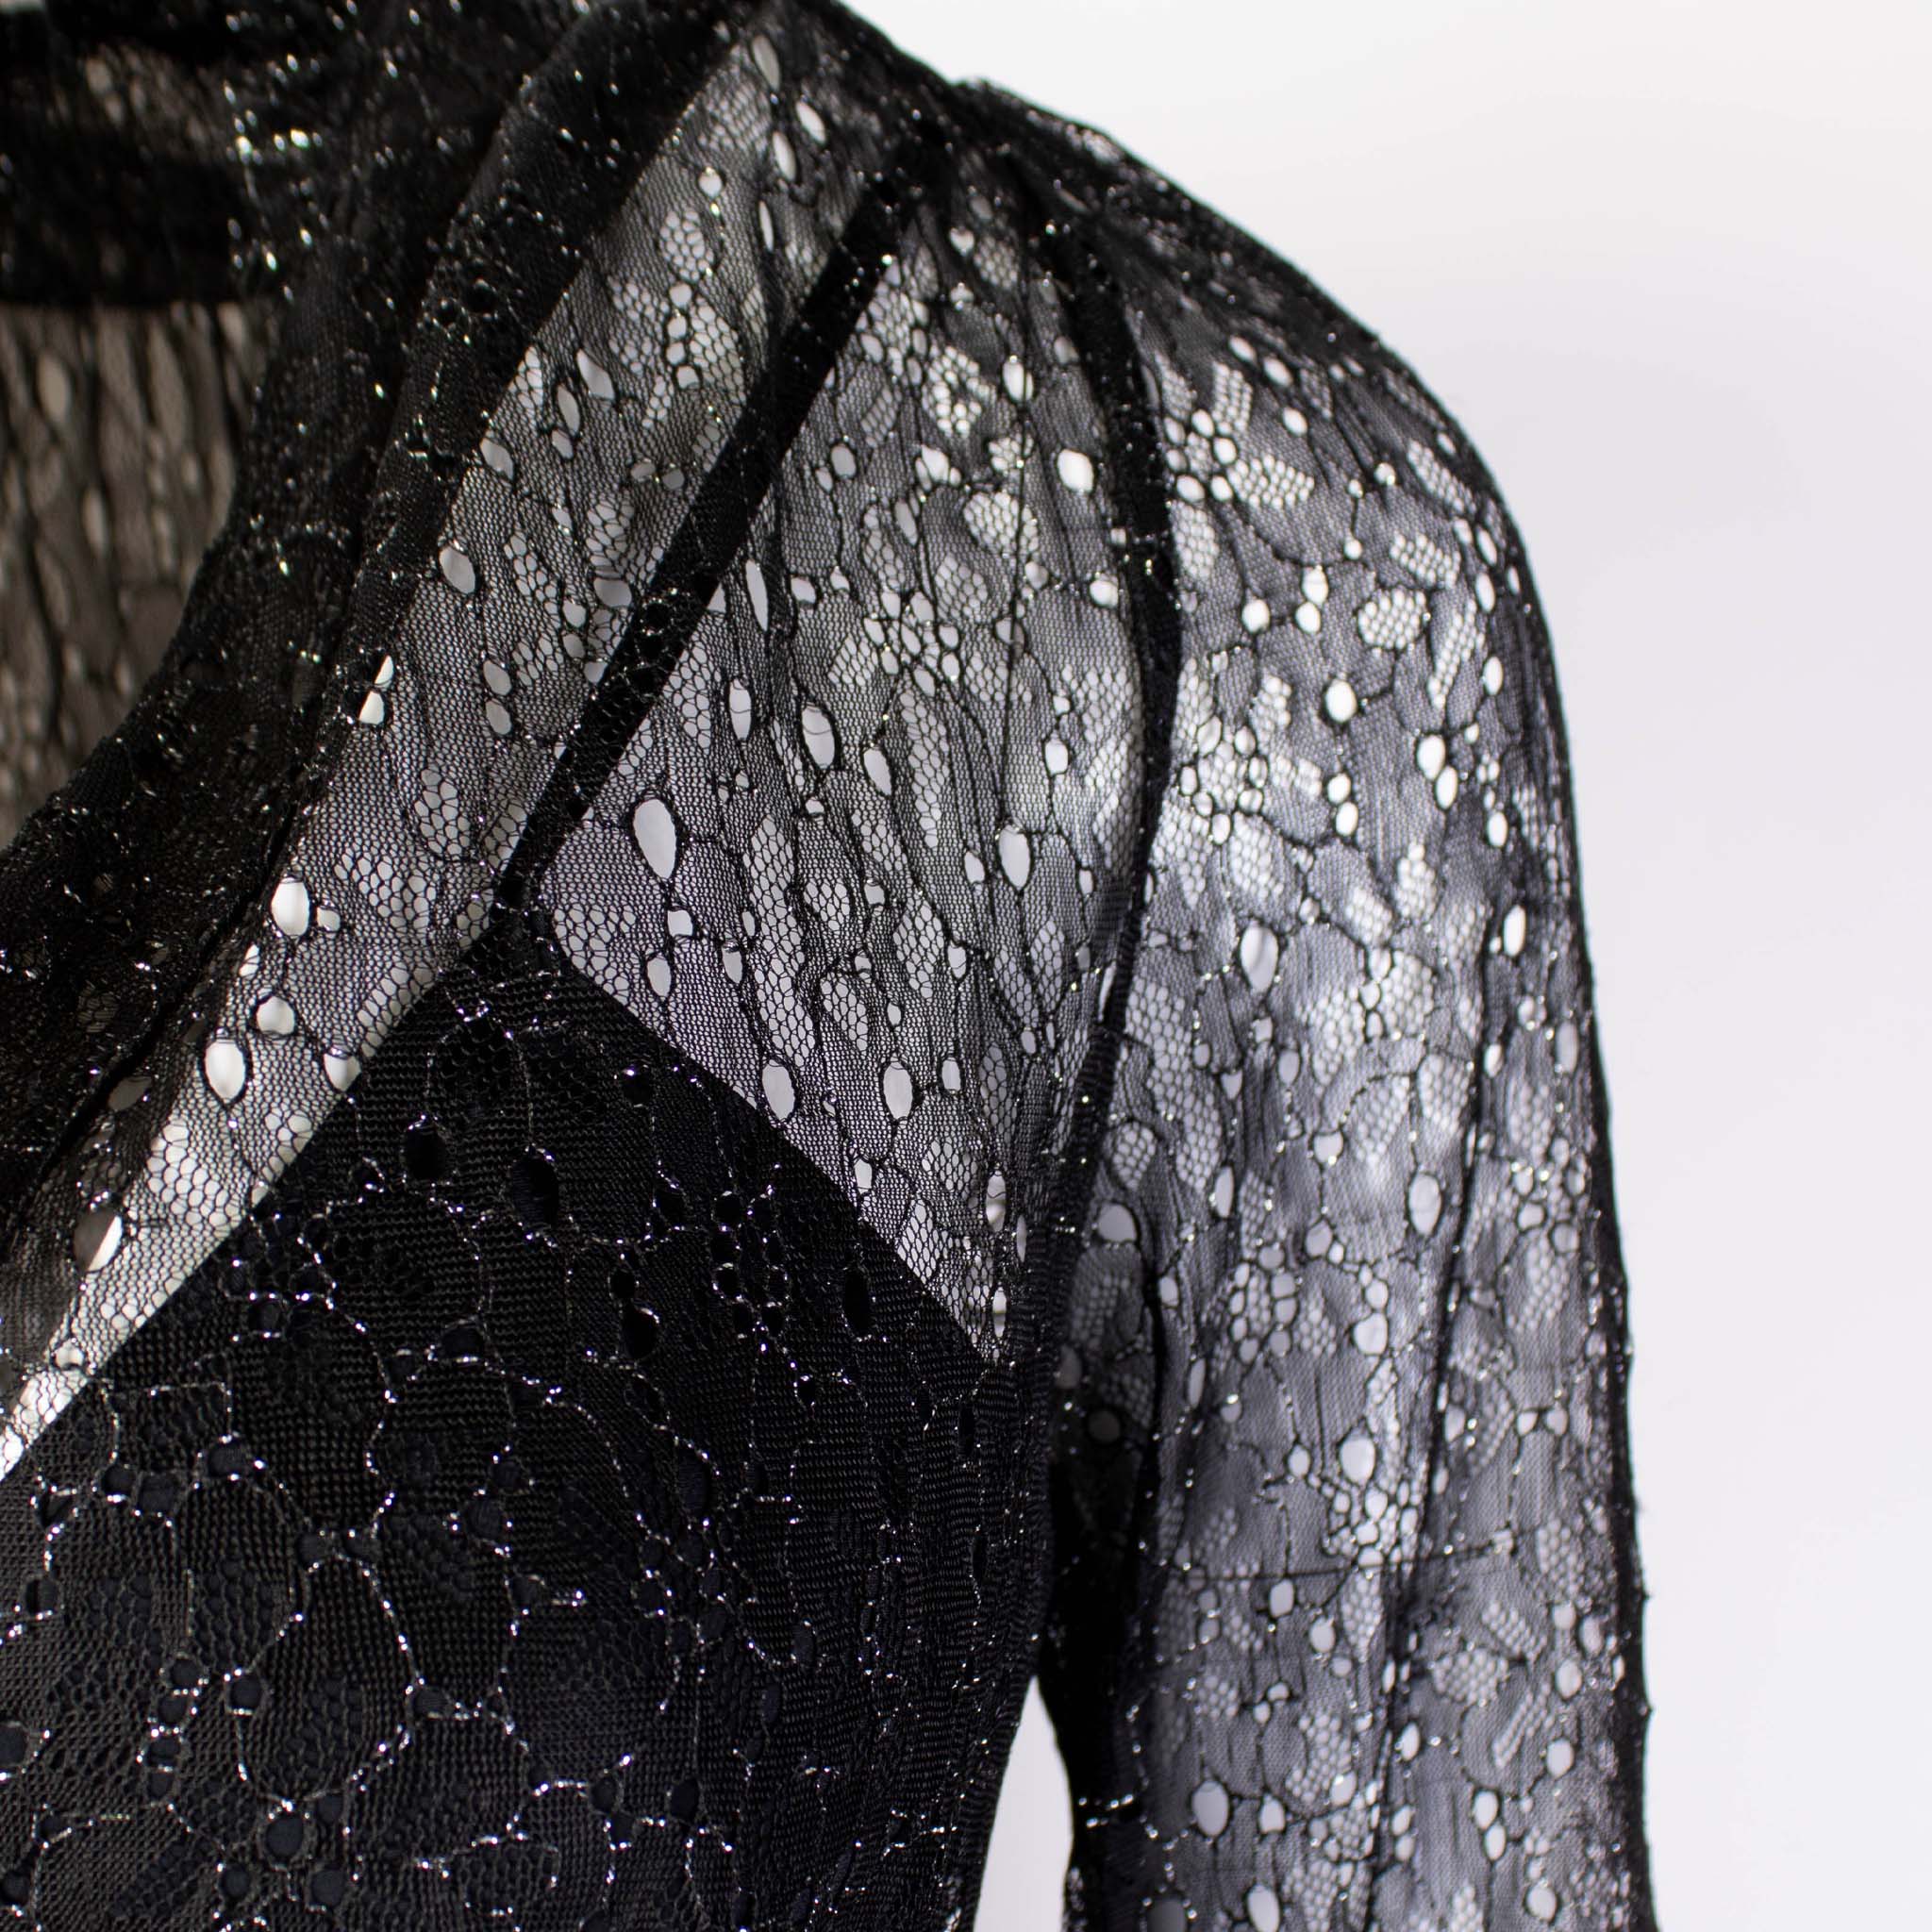 Lardini Black Long Embellished Dress with petticoat - Fizigo